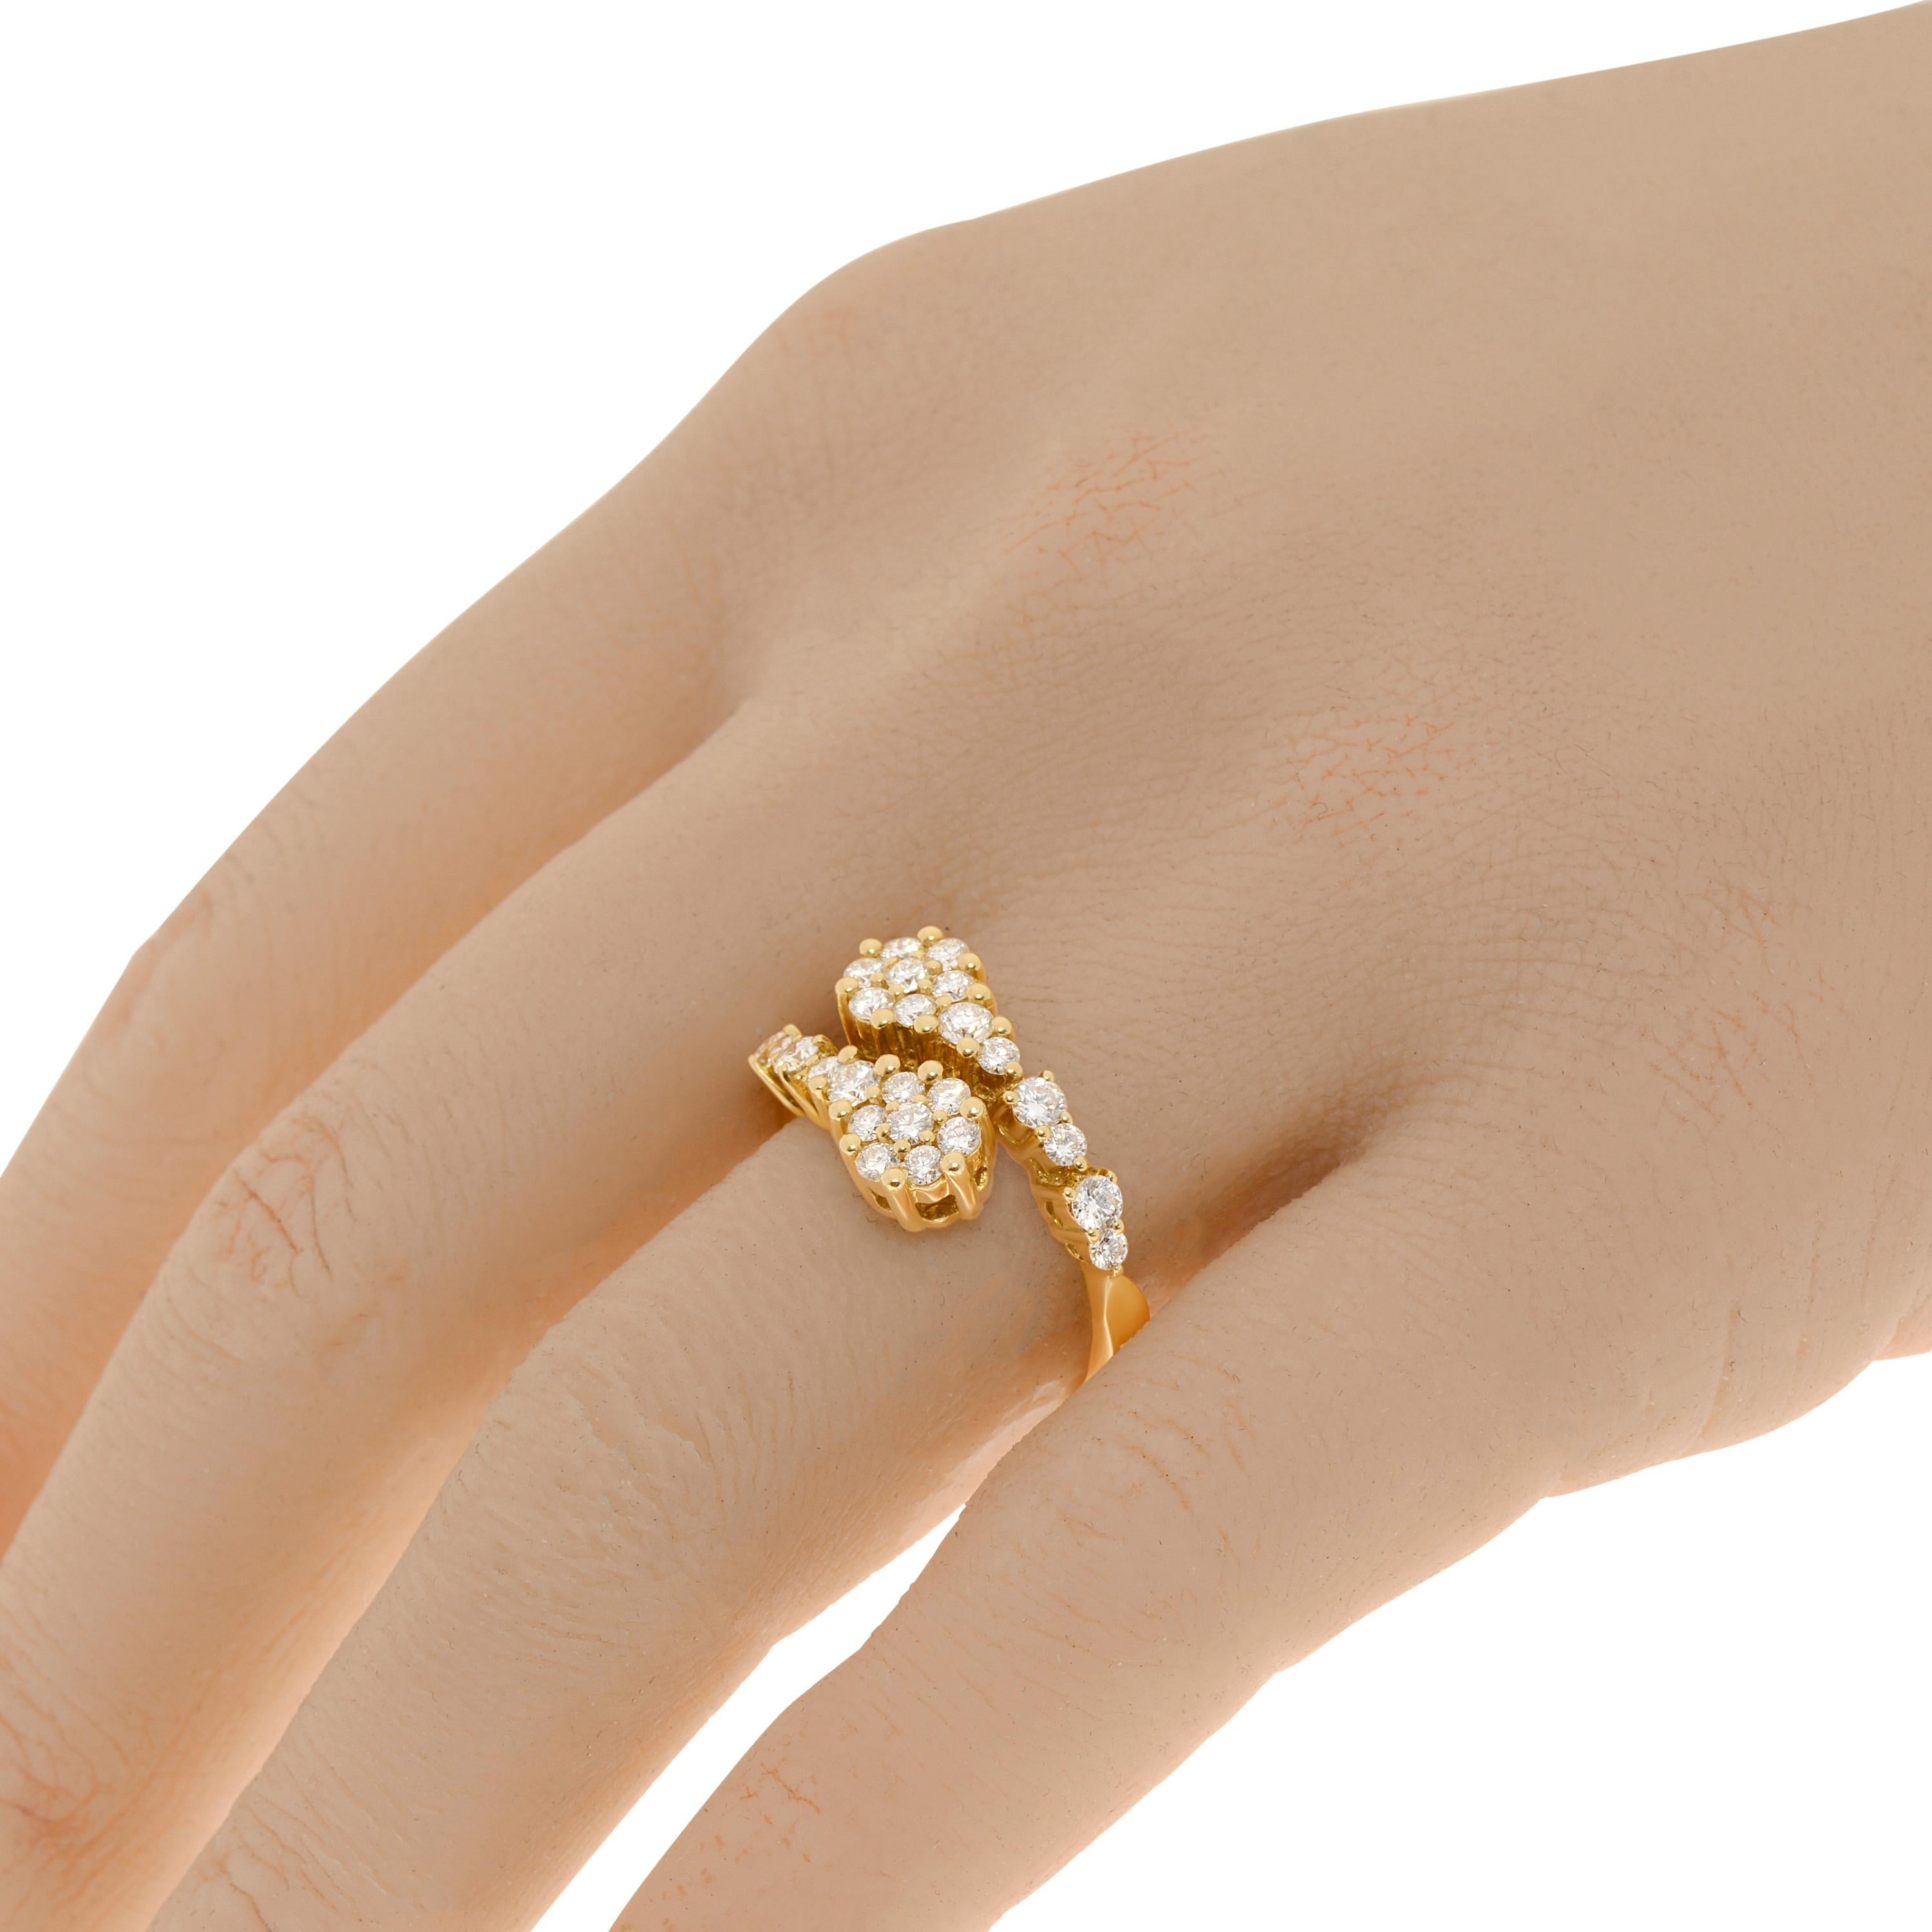 ZYDO 18K Gelbgold Contrarier Ring mit 1,02ct. Diamanten. Die Ringgröße ist 7,5 (55,7). Die Dekoration ist 1/2